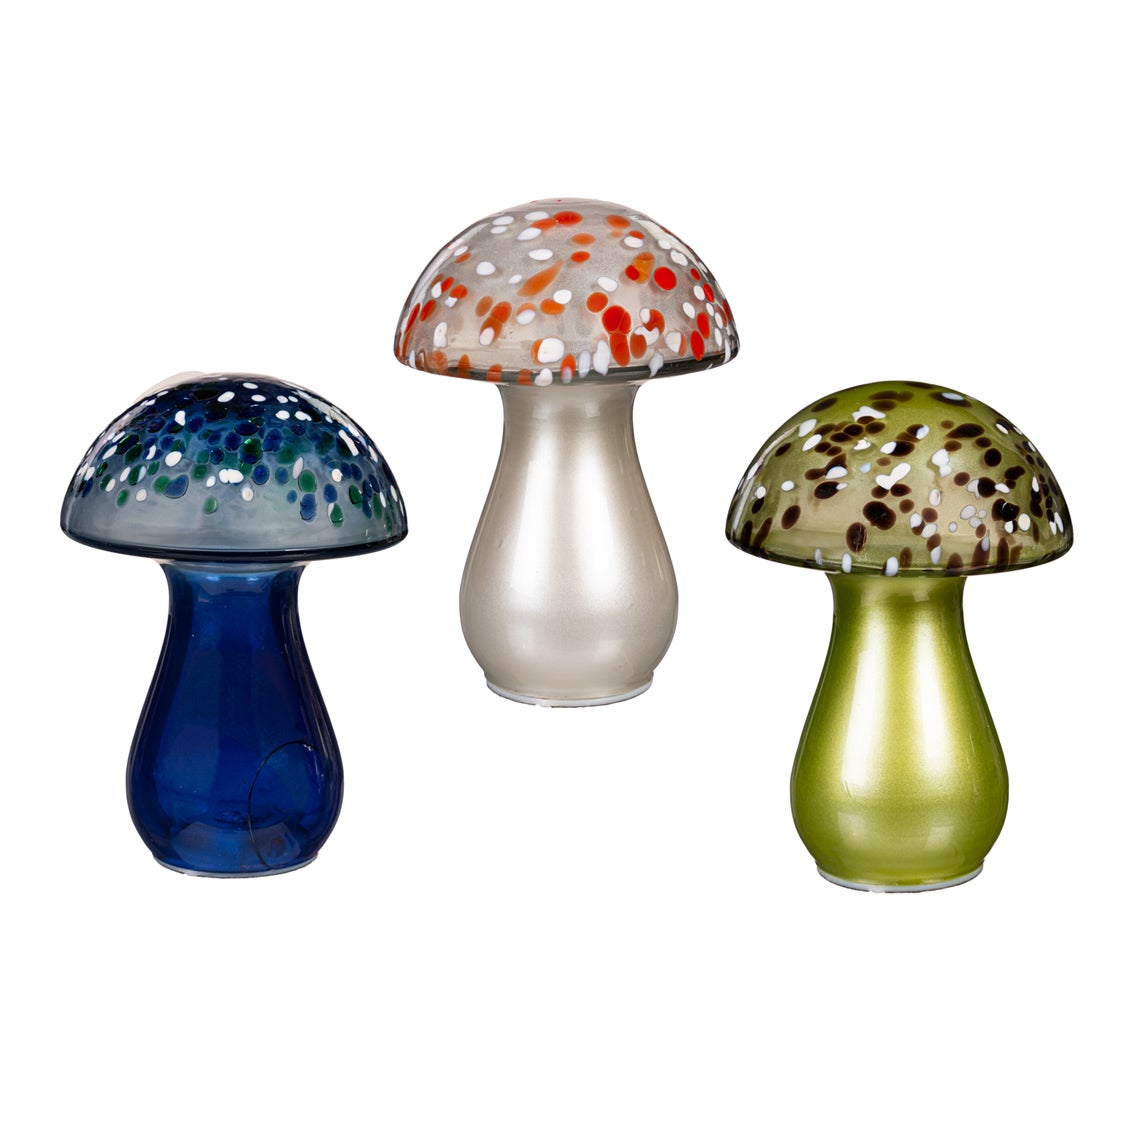 8" LED Glass Mushroom Tabletop Décor